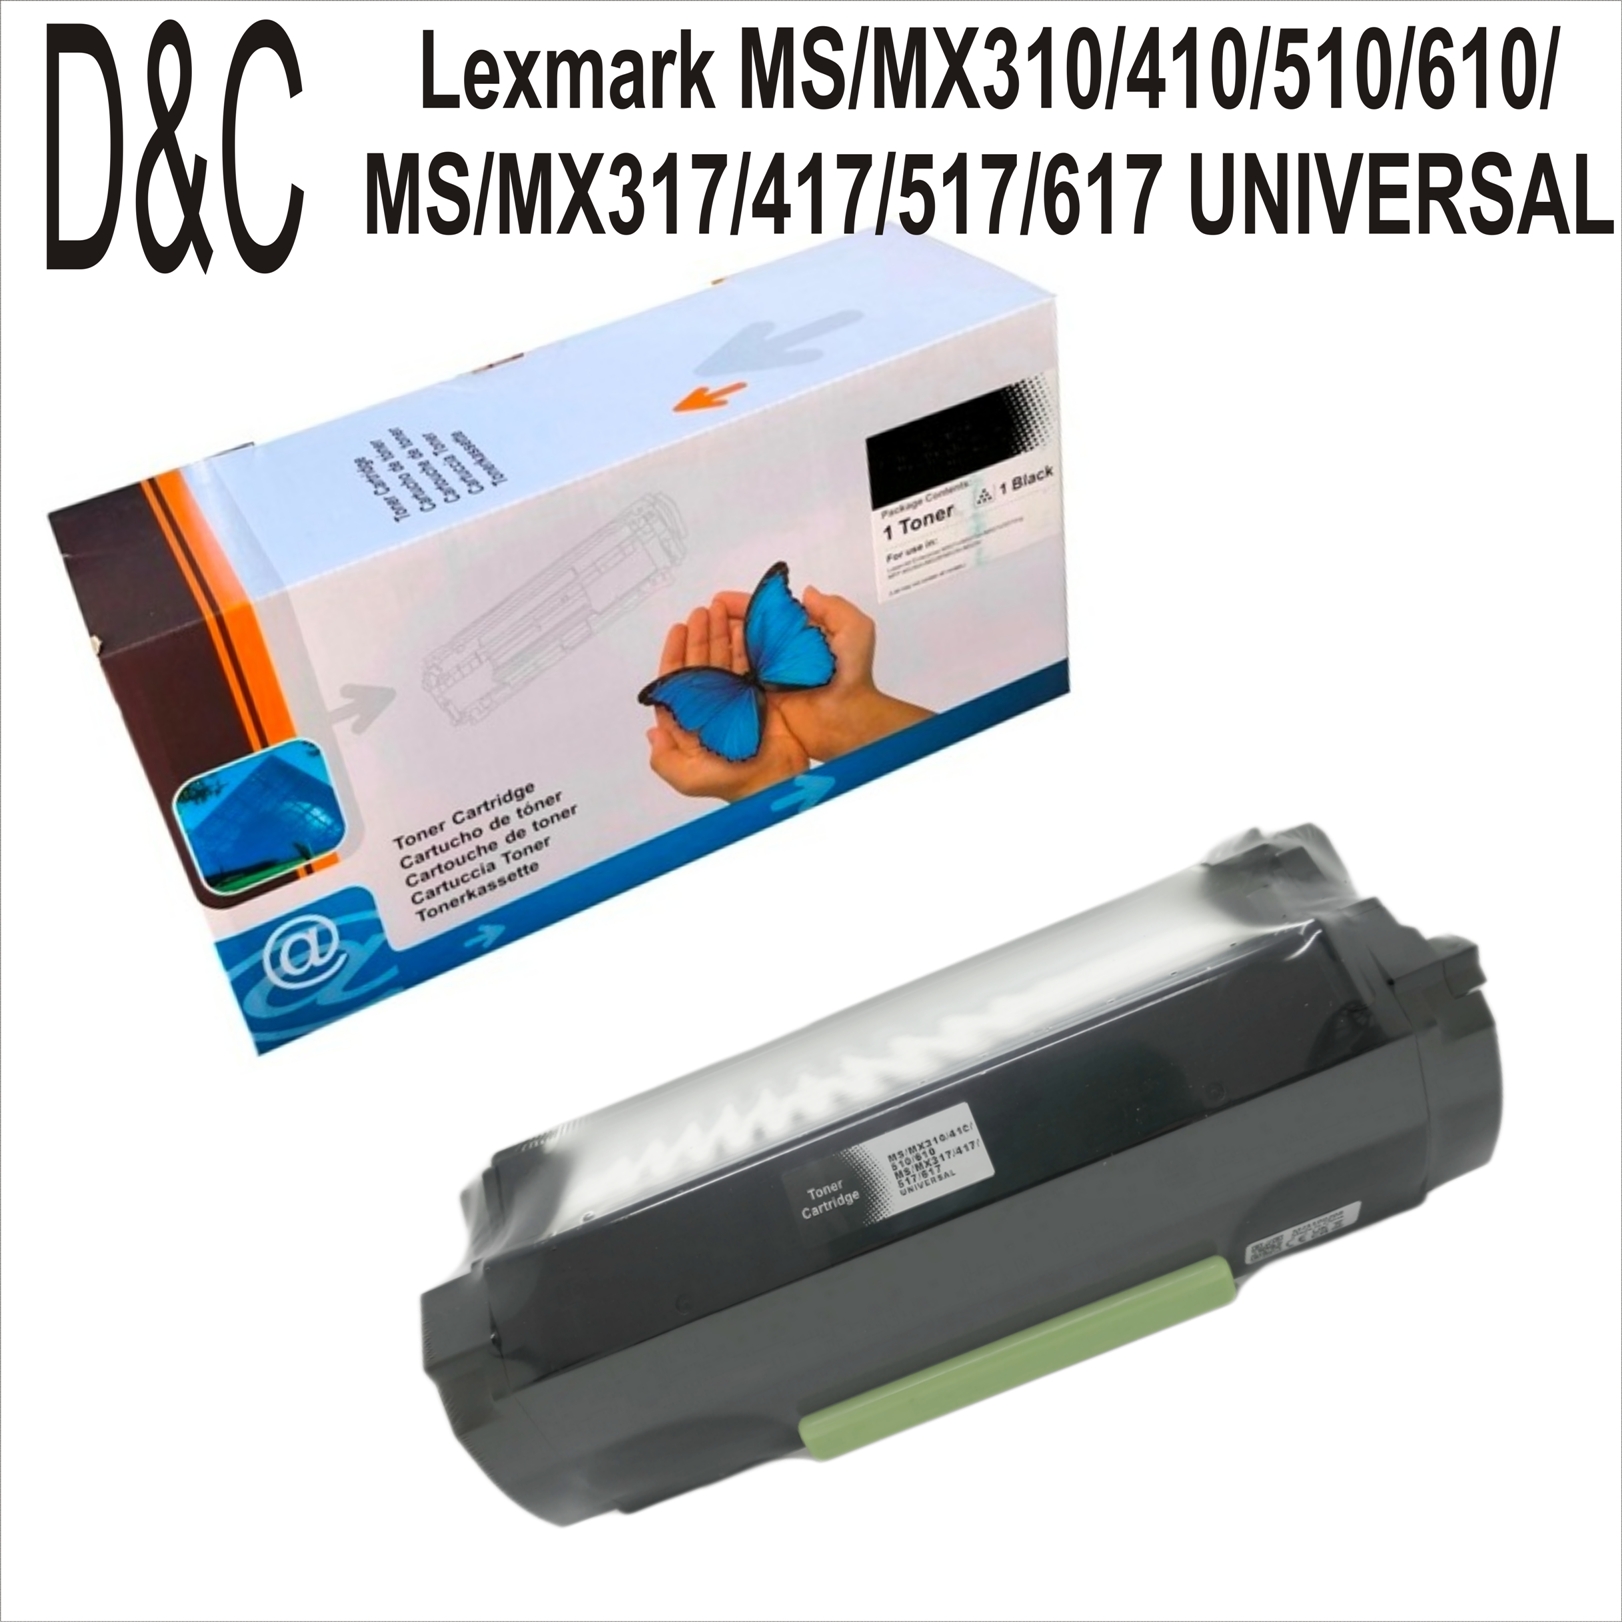 Lexmark MS/MX310/410/510 MS/MX317/417(8.5K)D&C